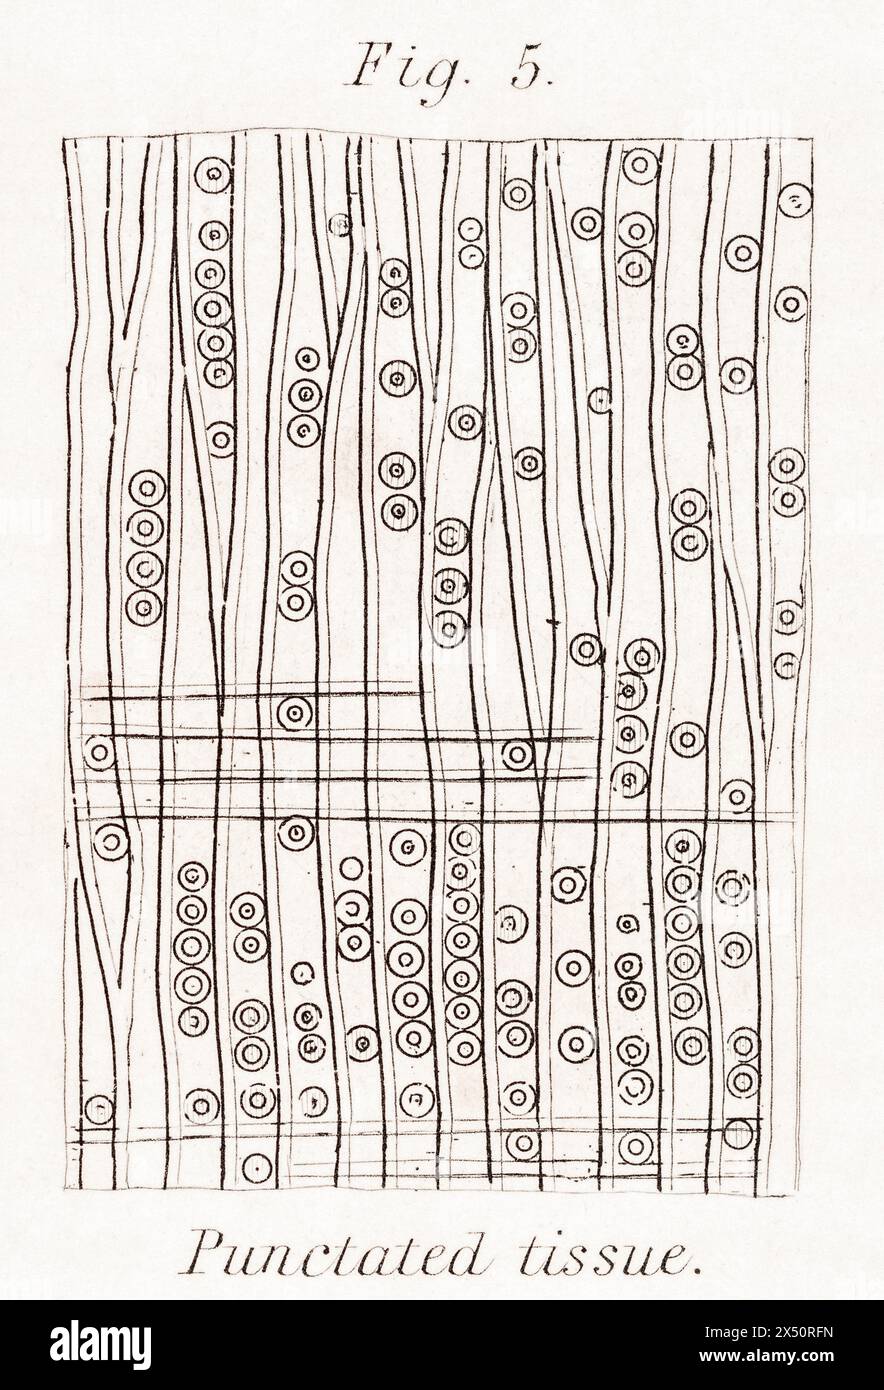 Botanische Gravur des hochvergrößerten Längsschnitts der Tanne aus dem 19. Jahrhundert mit punktiertem oder scheibentragendem Gewebe. Von Wm. Rhind, 1872 / siehe Hinweise. Stockfoto